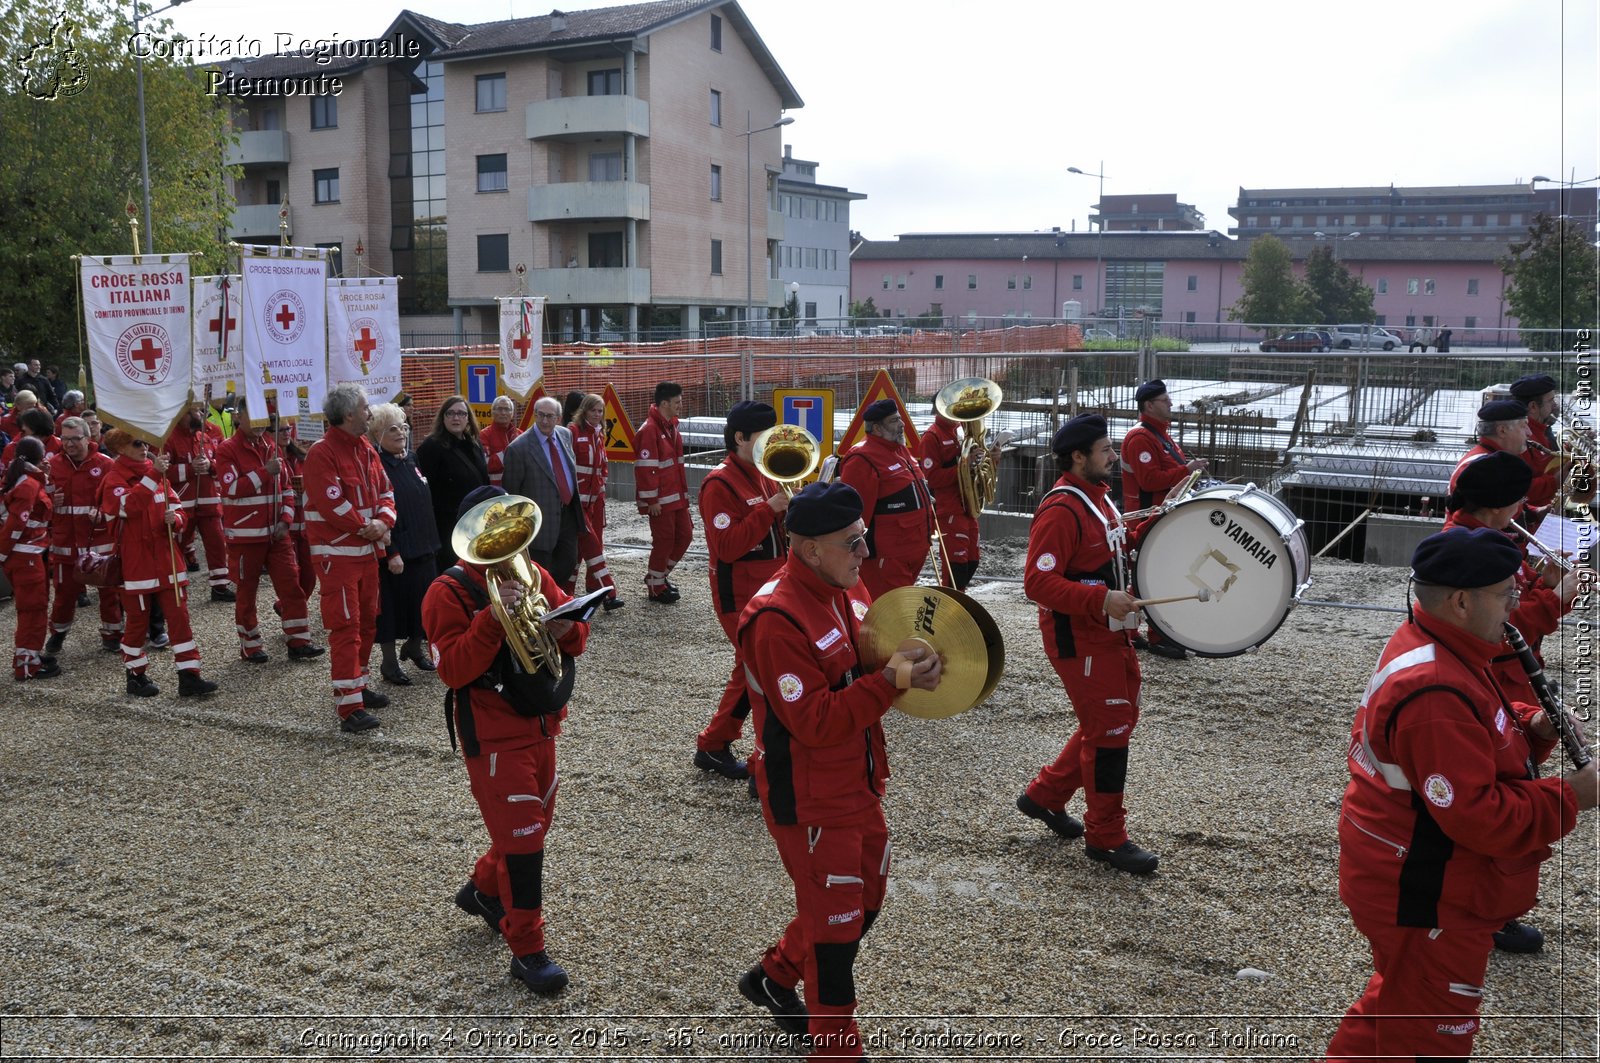 Carmagnola 4 Ottobre 2015 - 35 anniversario di fondazione - Croce Rossa Italiana- Comitato Regionale del Piemonte